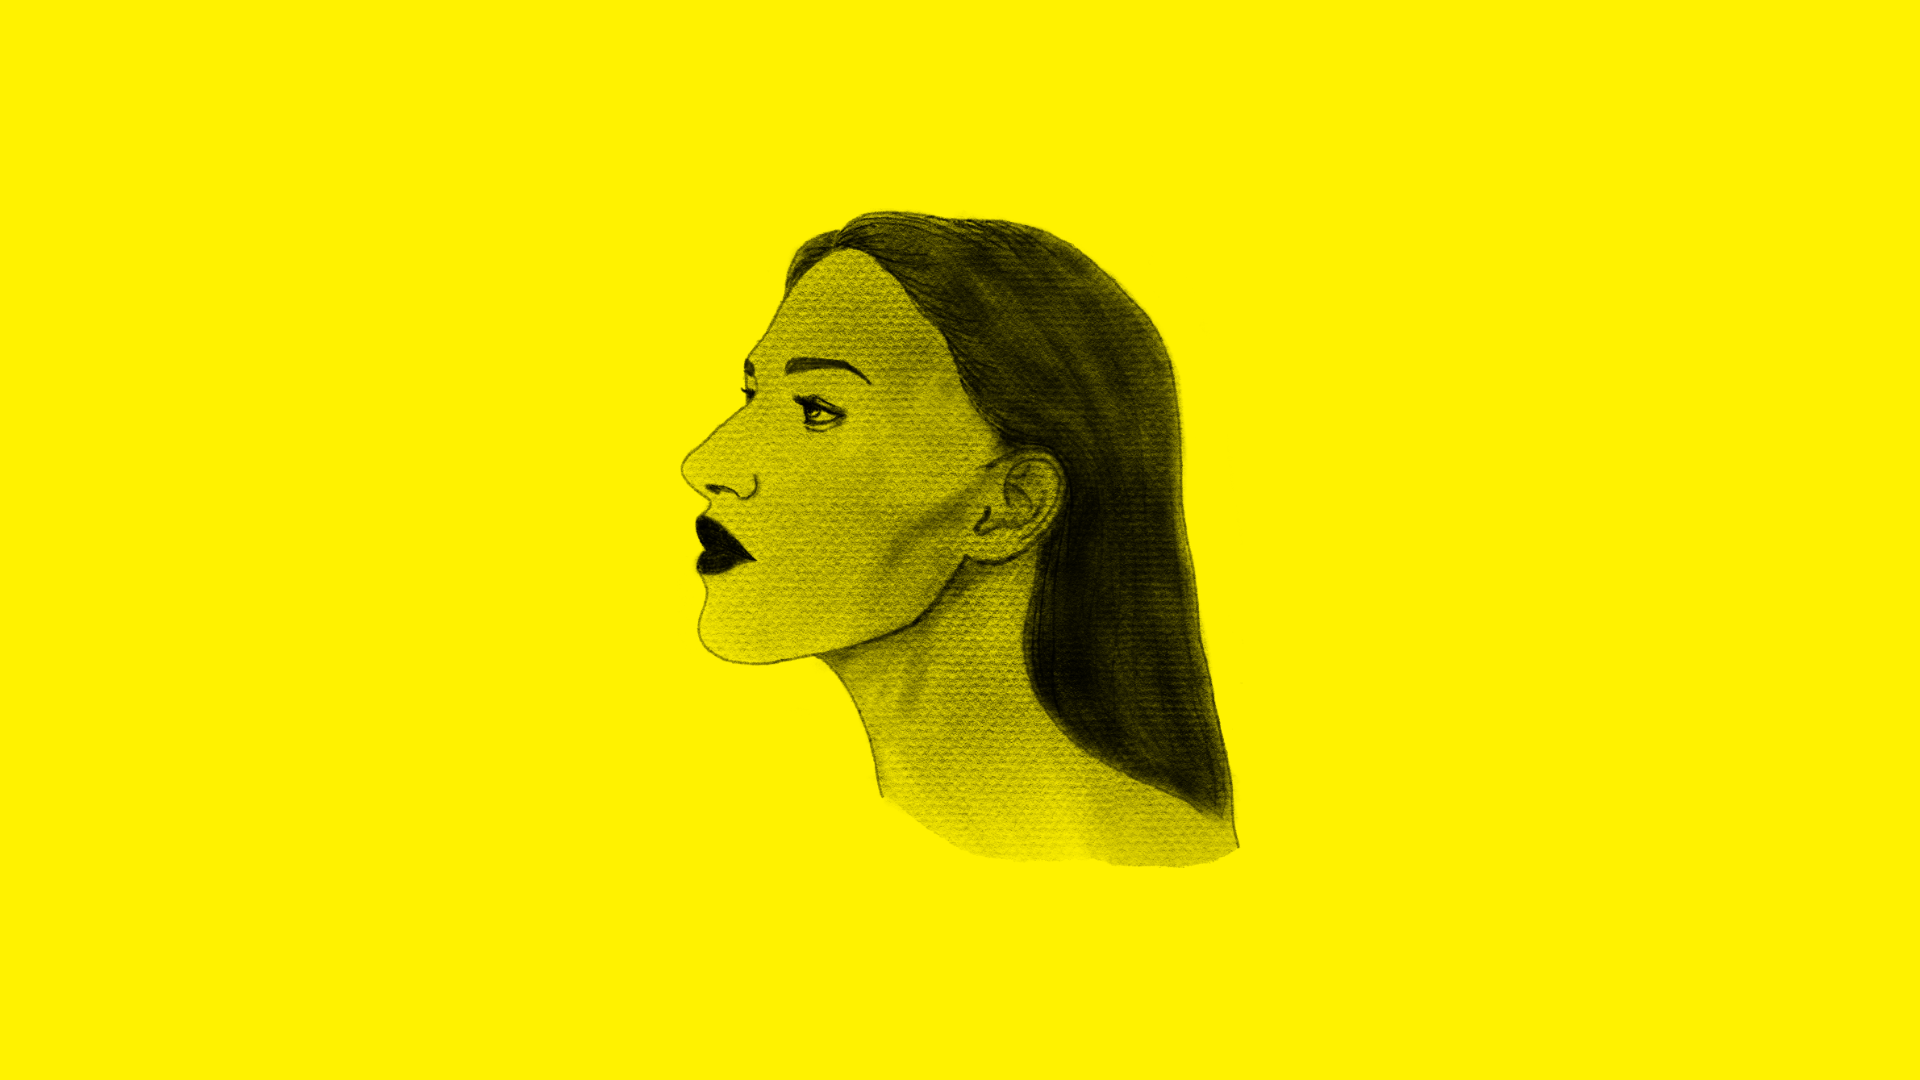 Czarny rysunek twarzy kobiety z profilu na żółtym tle